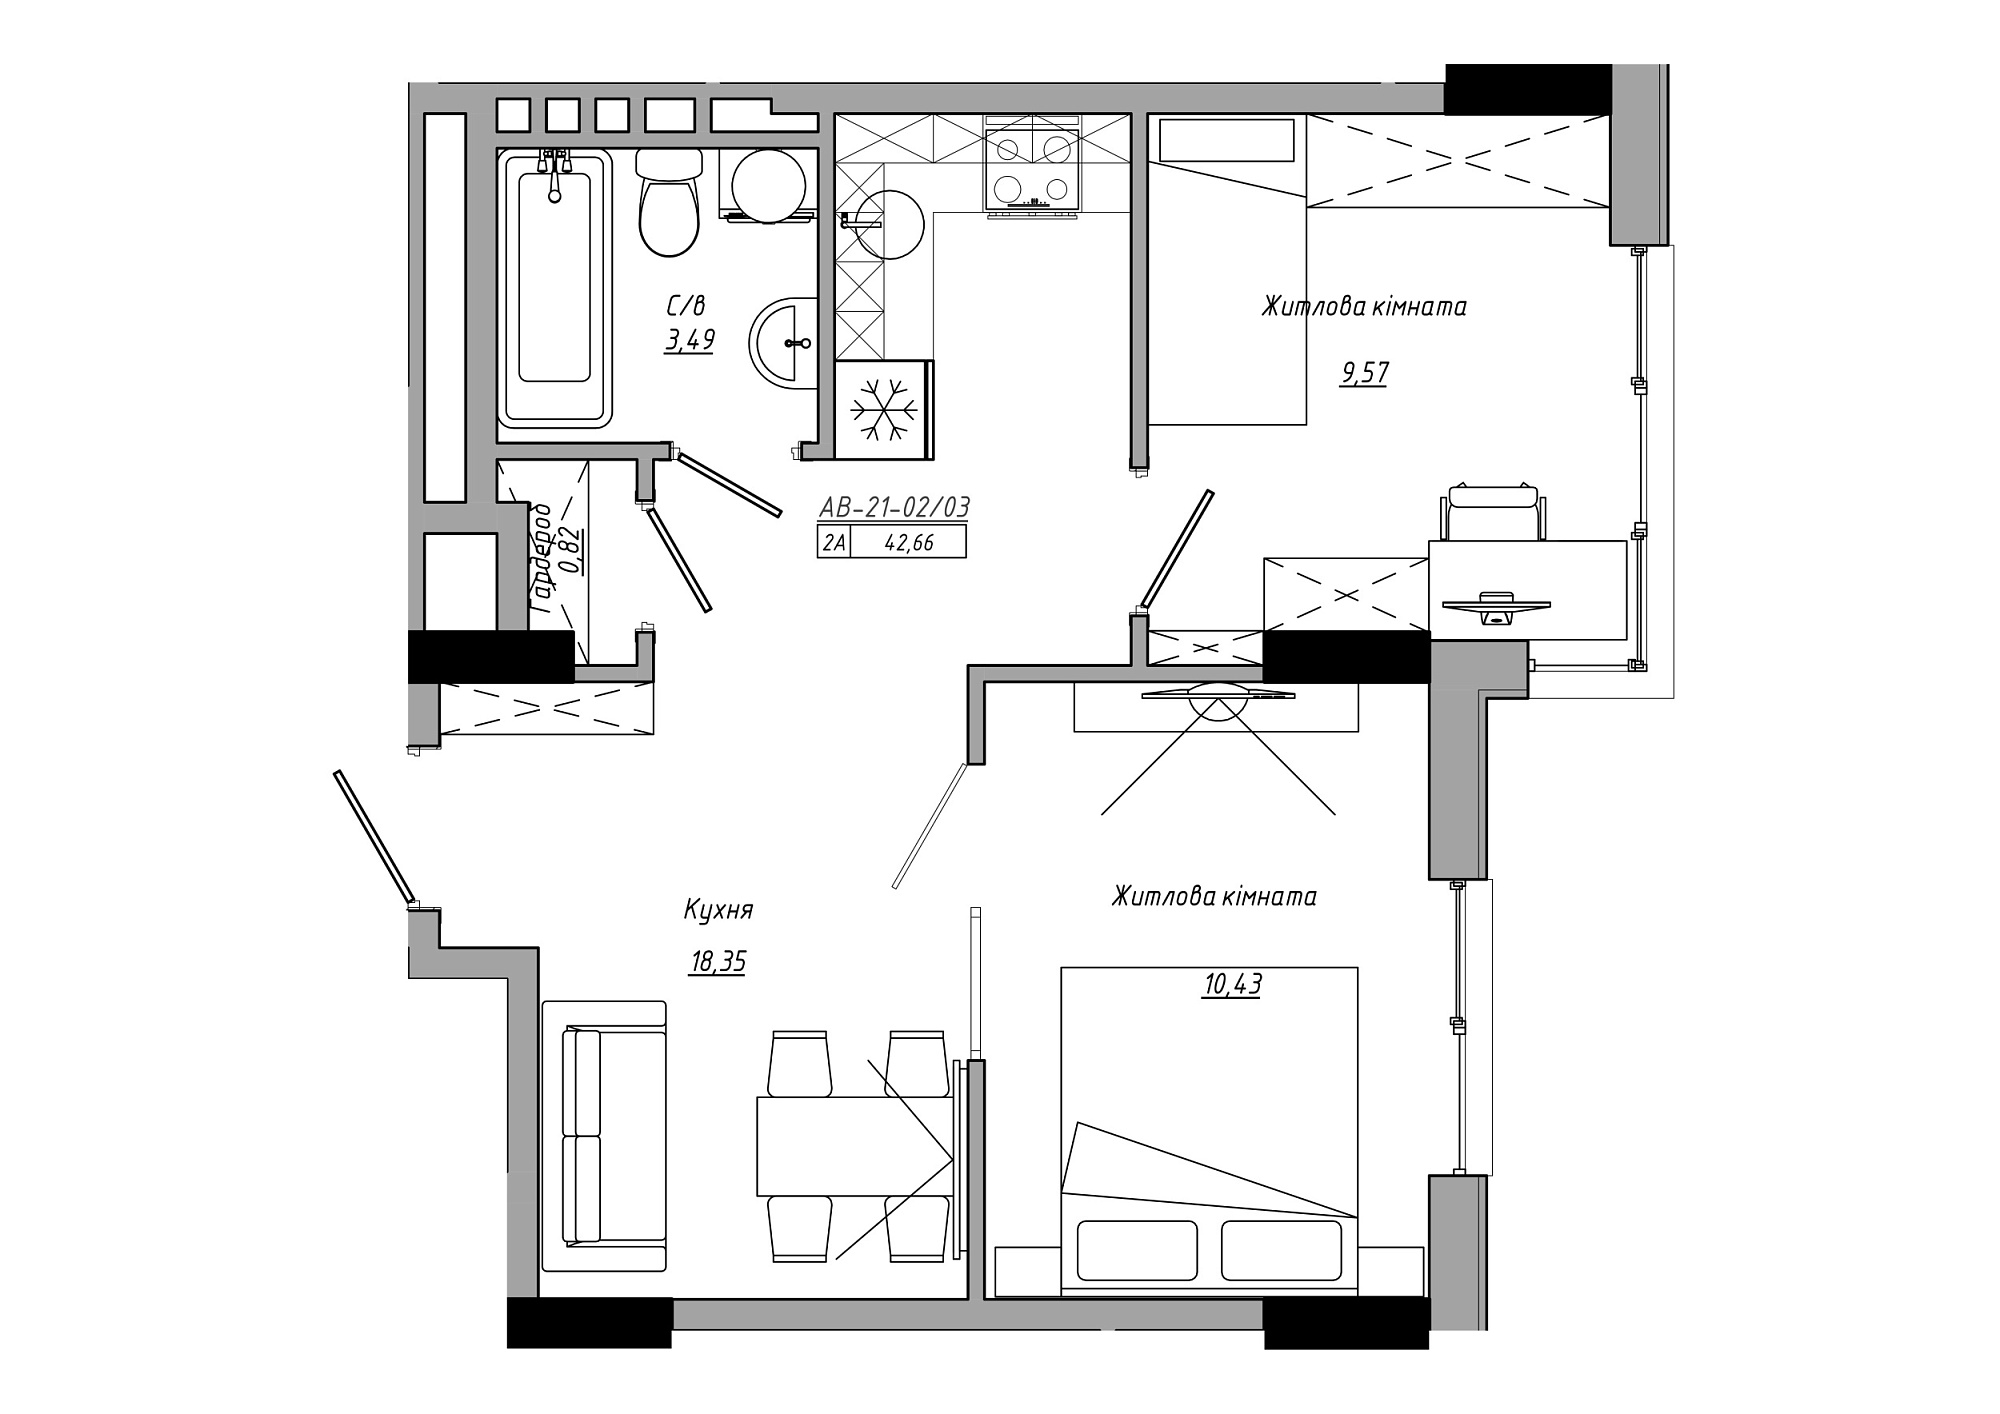 Планування 2-к квартира площею 42.66м2, AB-21-02/00003.